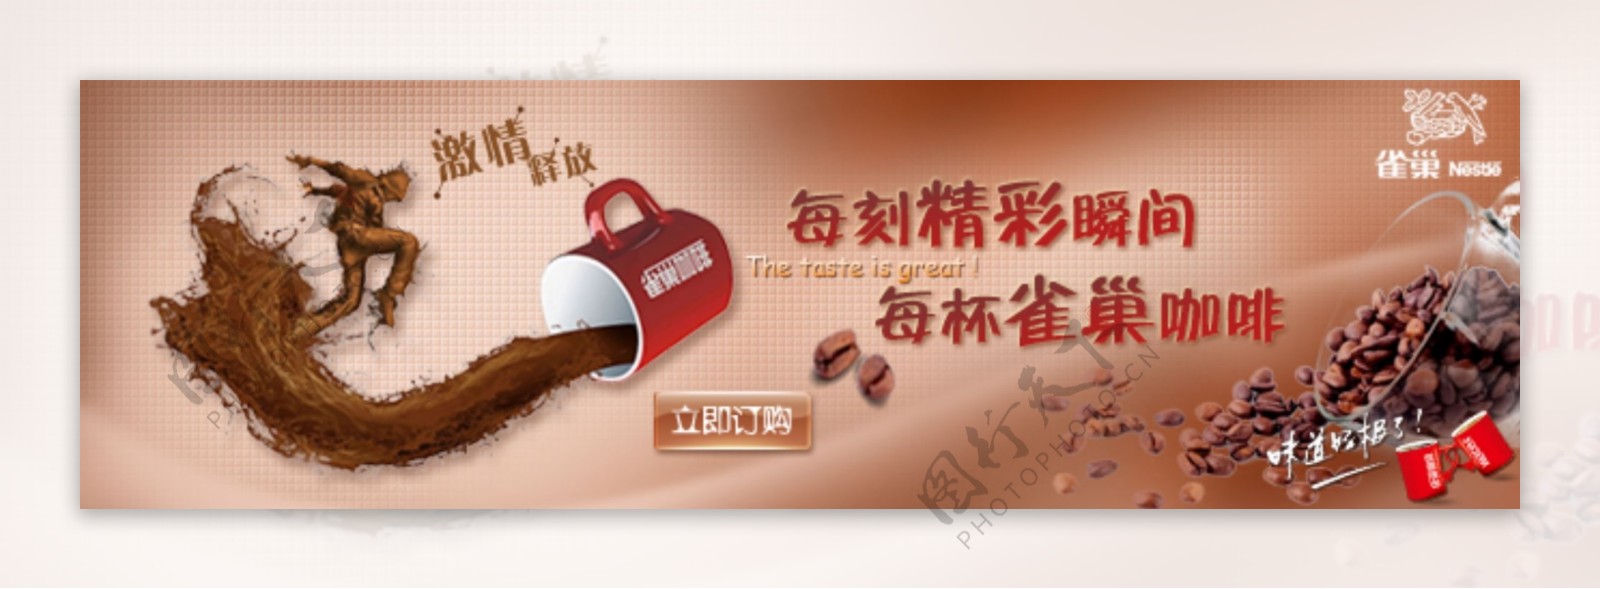 淘宝雀巢咖啡促销海报设计